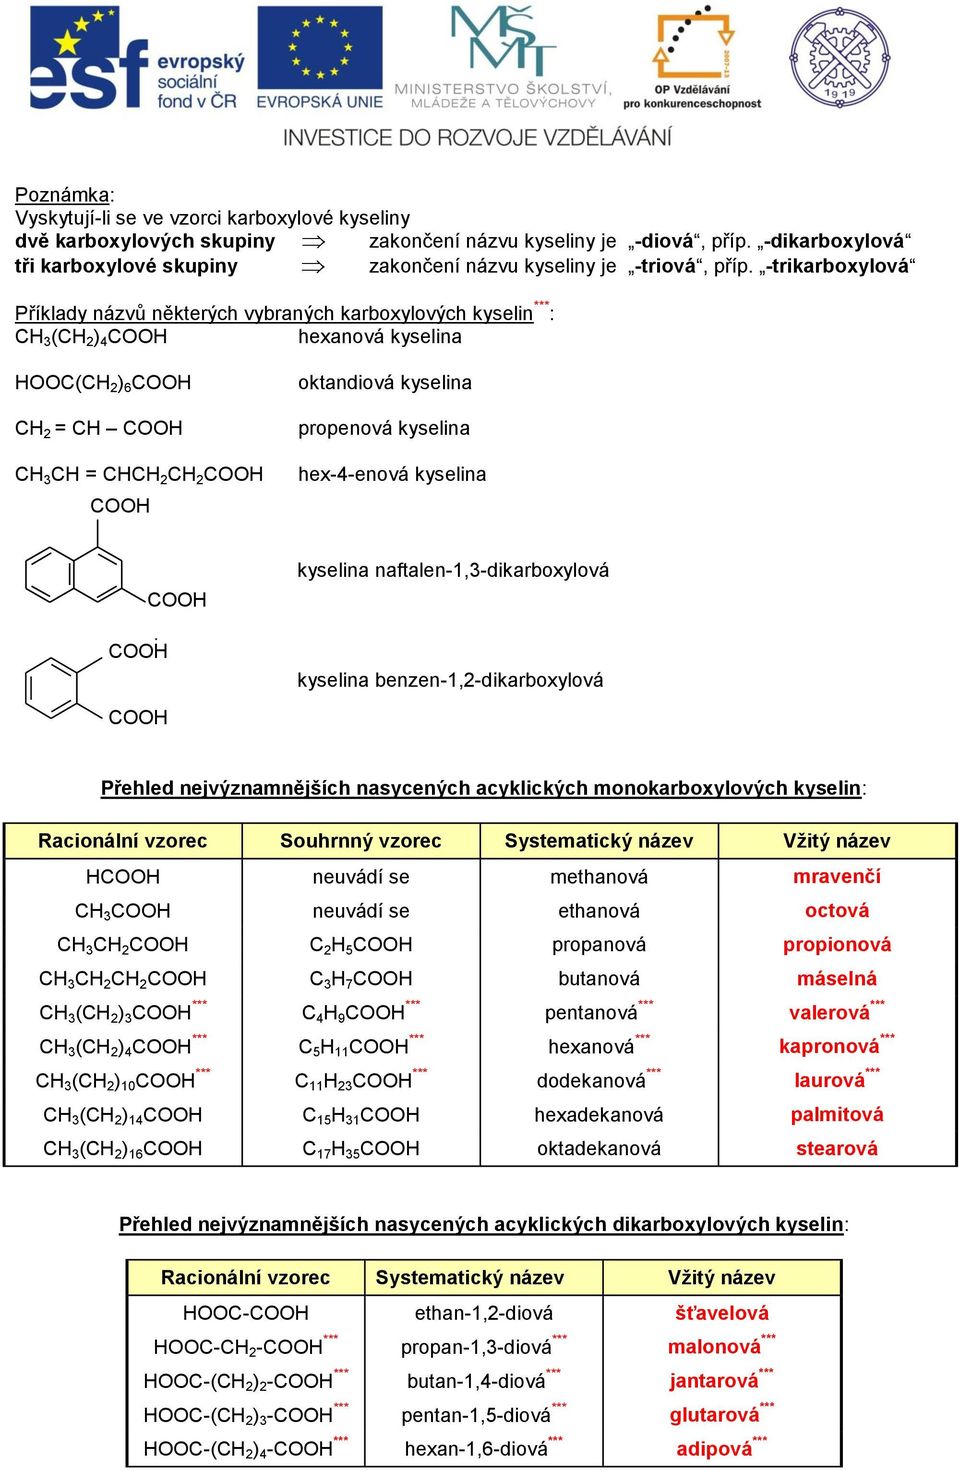 -trikarboxylová říklady názvů některých vybraných karboxylových kyselin *** : 3 ( 2 ) 4 hexanová kyselina ( 2 ) 6 2 = 3 = 2 2 oktandiová kyselina propenová kyselina hex-4-enová kyselina kyselina